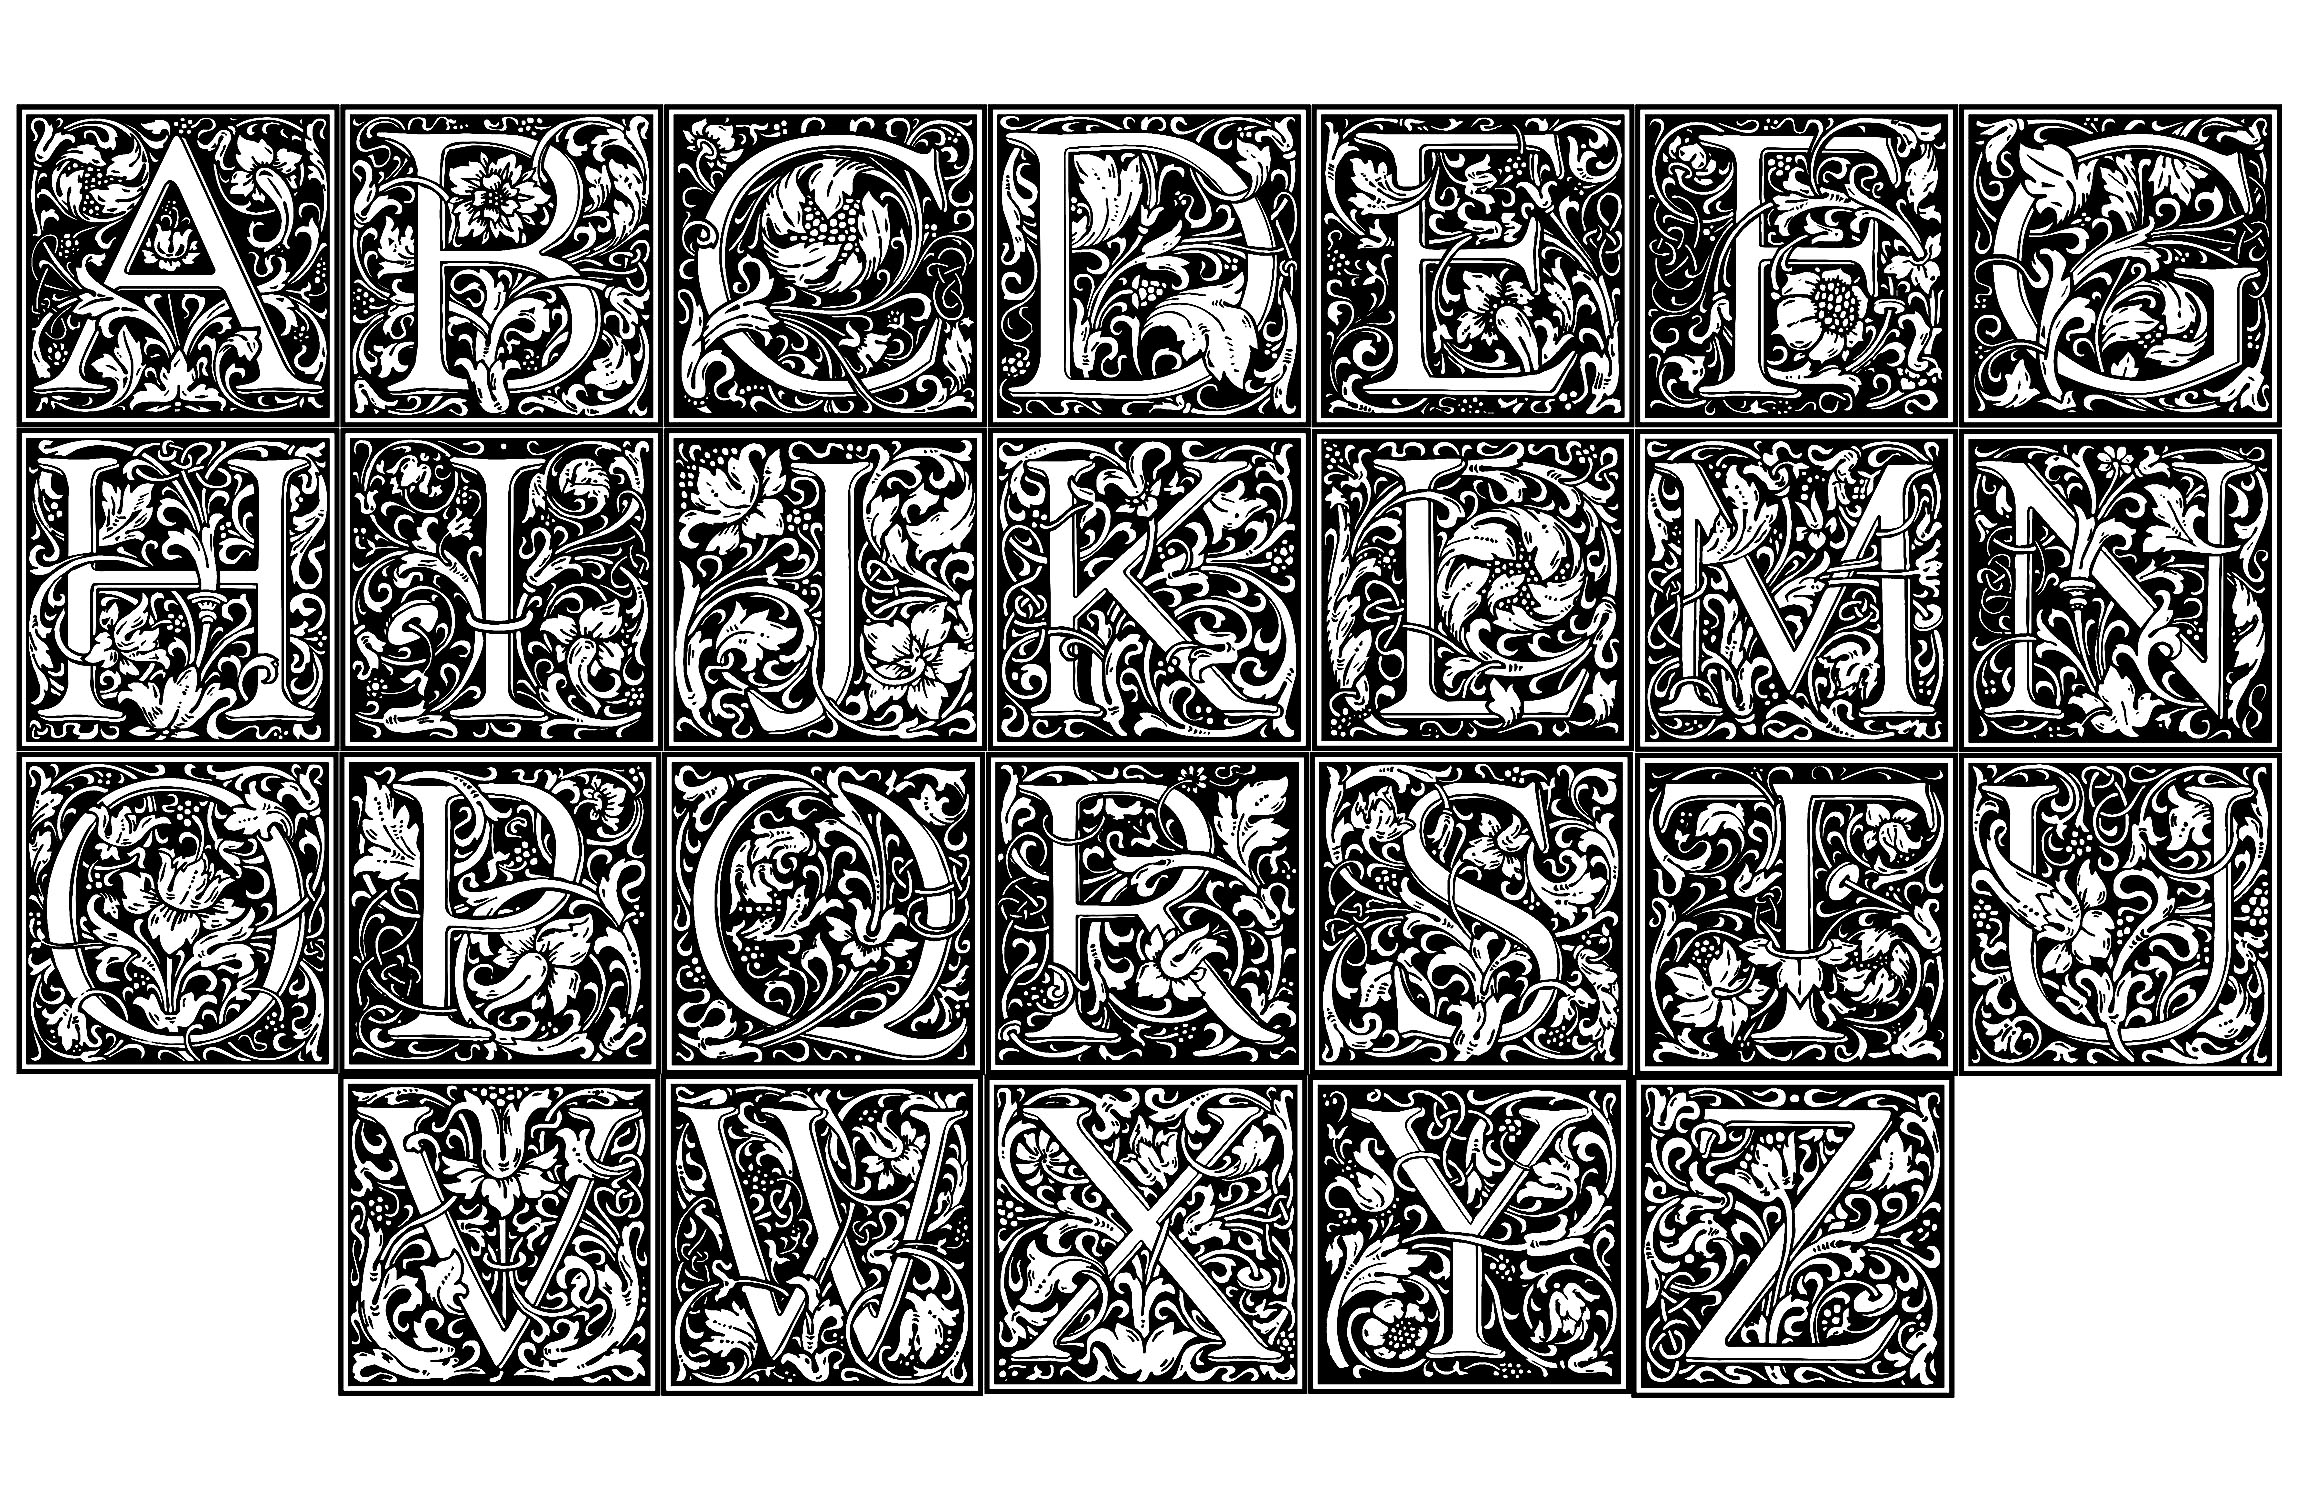 Un Alphabet entier à colorier, créé à partir des illustrations de William Morris, artiste anglais (1834 - 1896). Chaque lettre de l'alphabet est agrémentée de motifs typiques du style Art